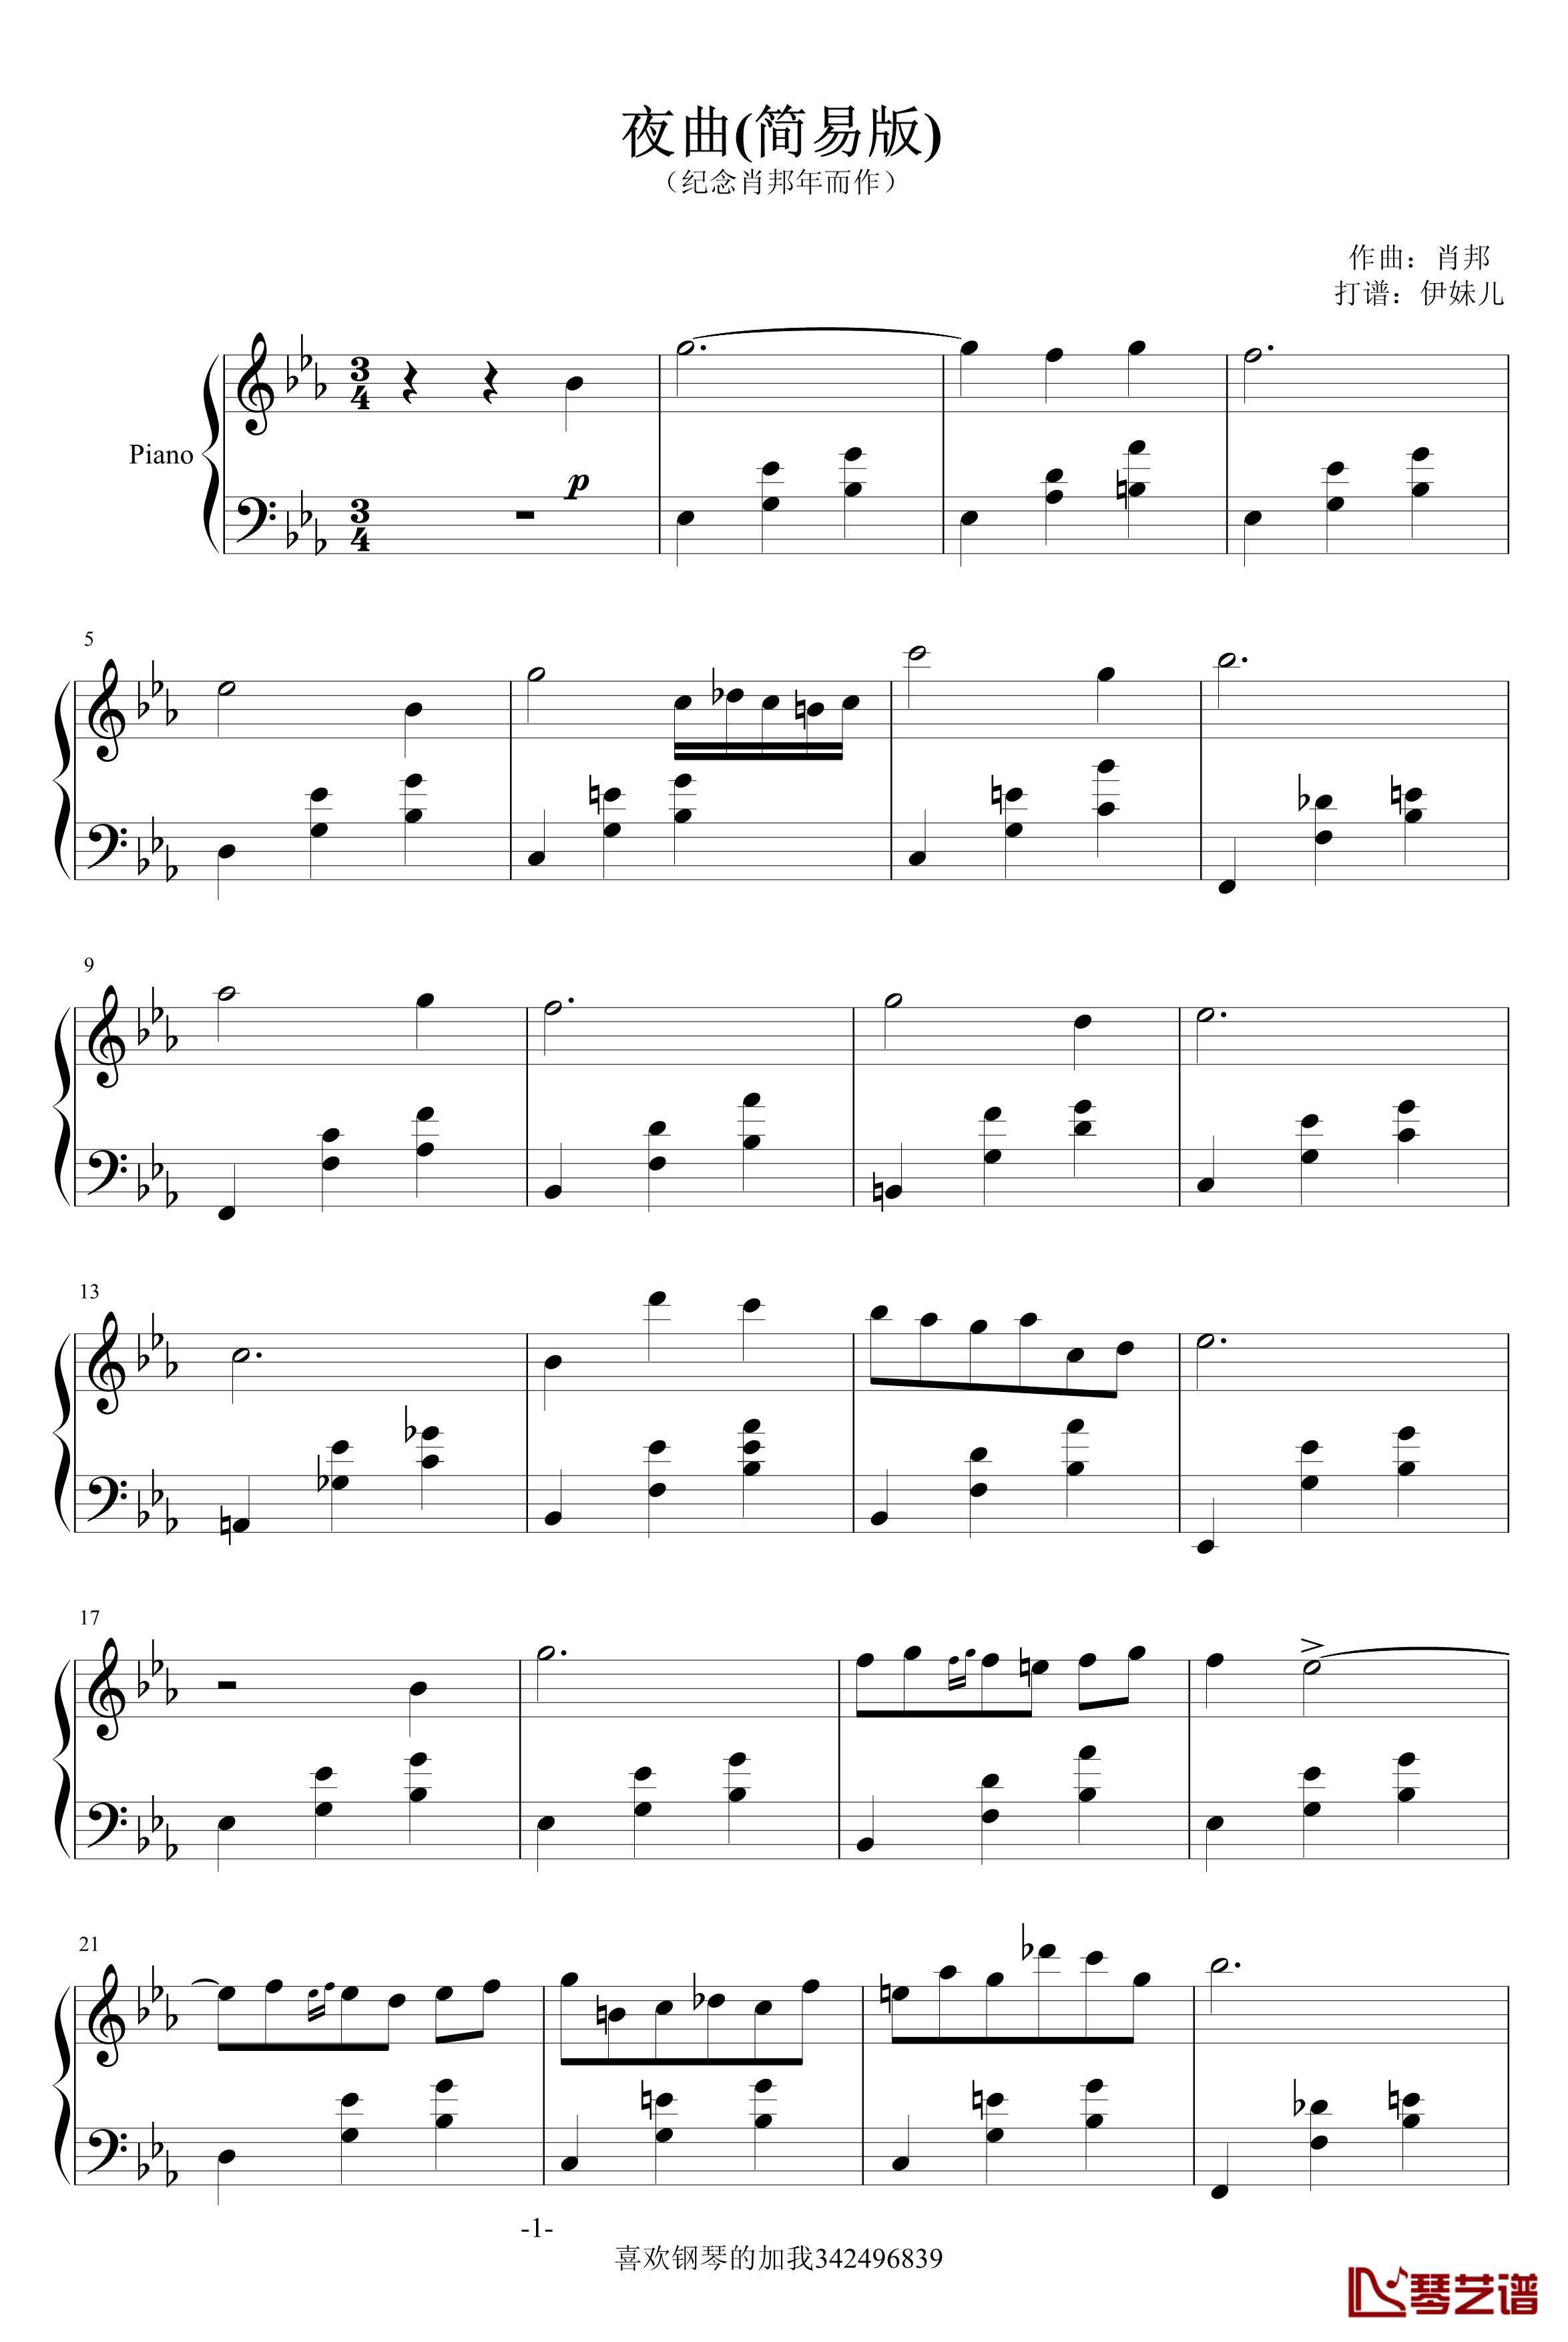 夜曲钢琴谱-简易版-肖邦-chopin1